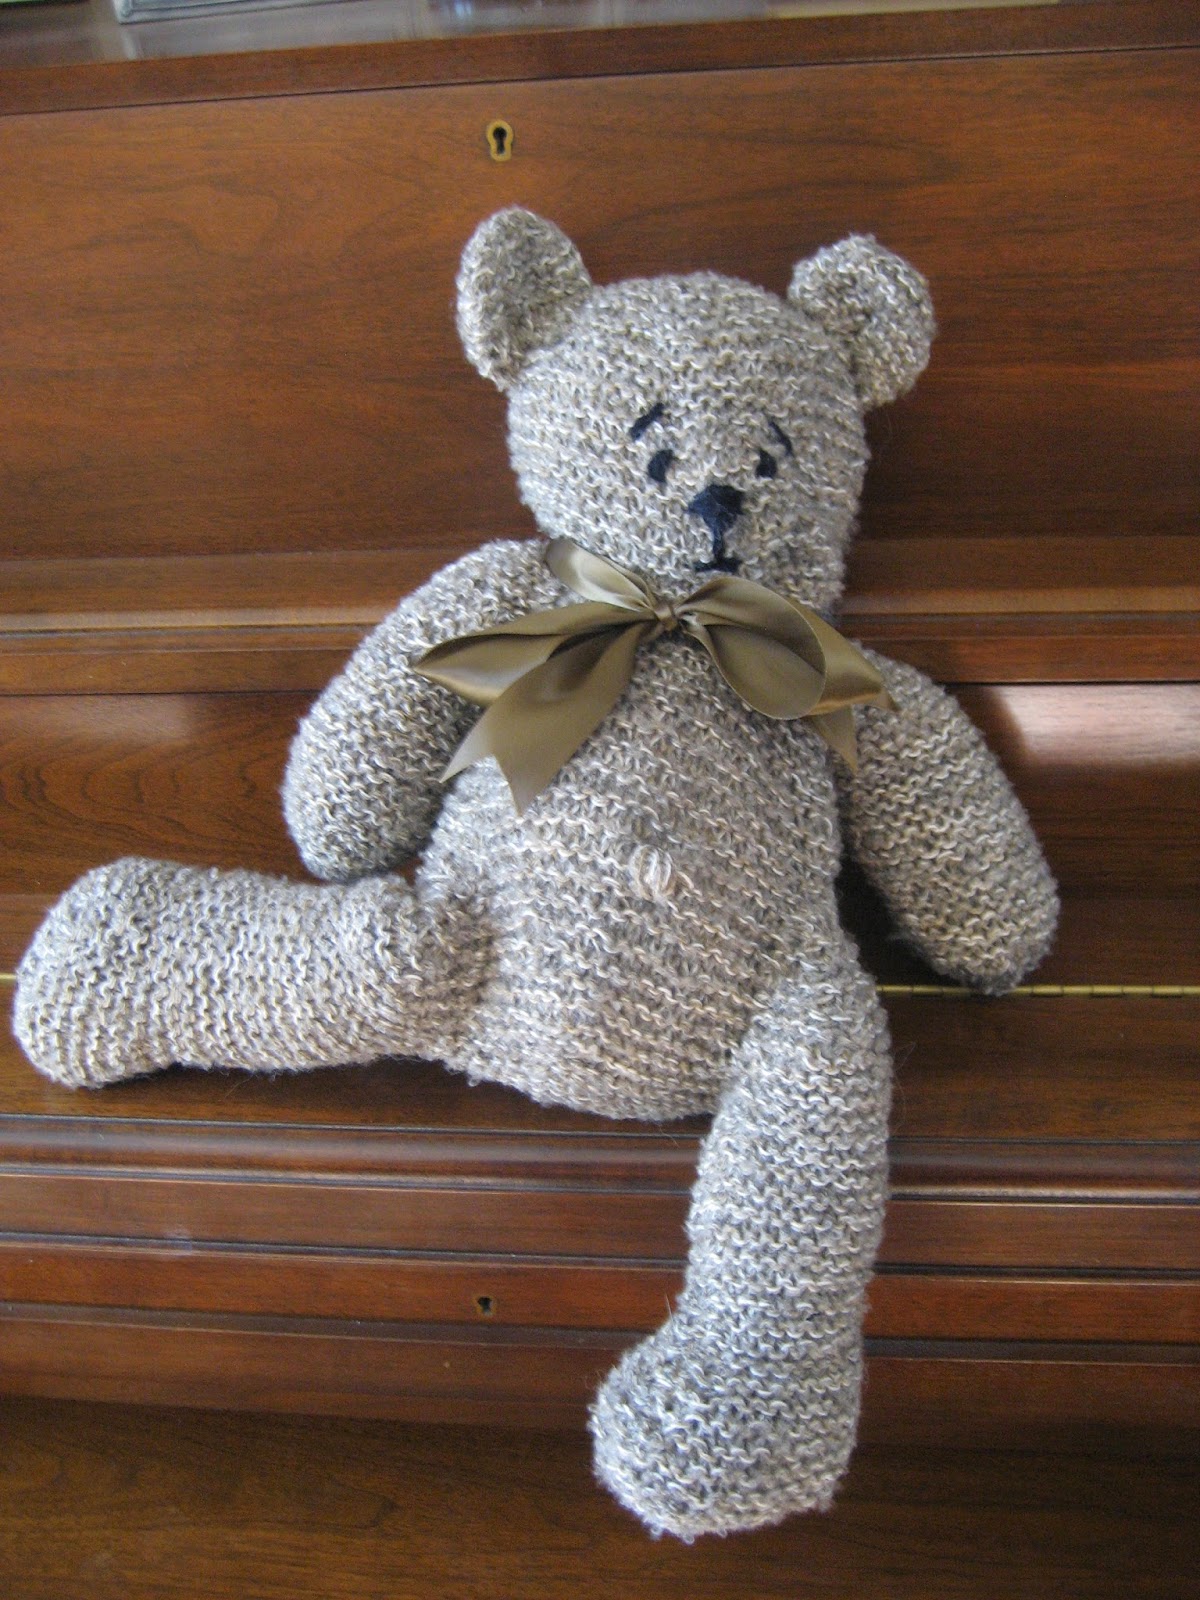 Ravelry: Teddy Bear pattern by Debbie Bliss